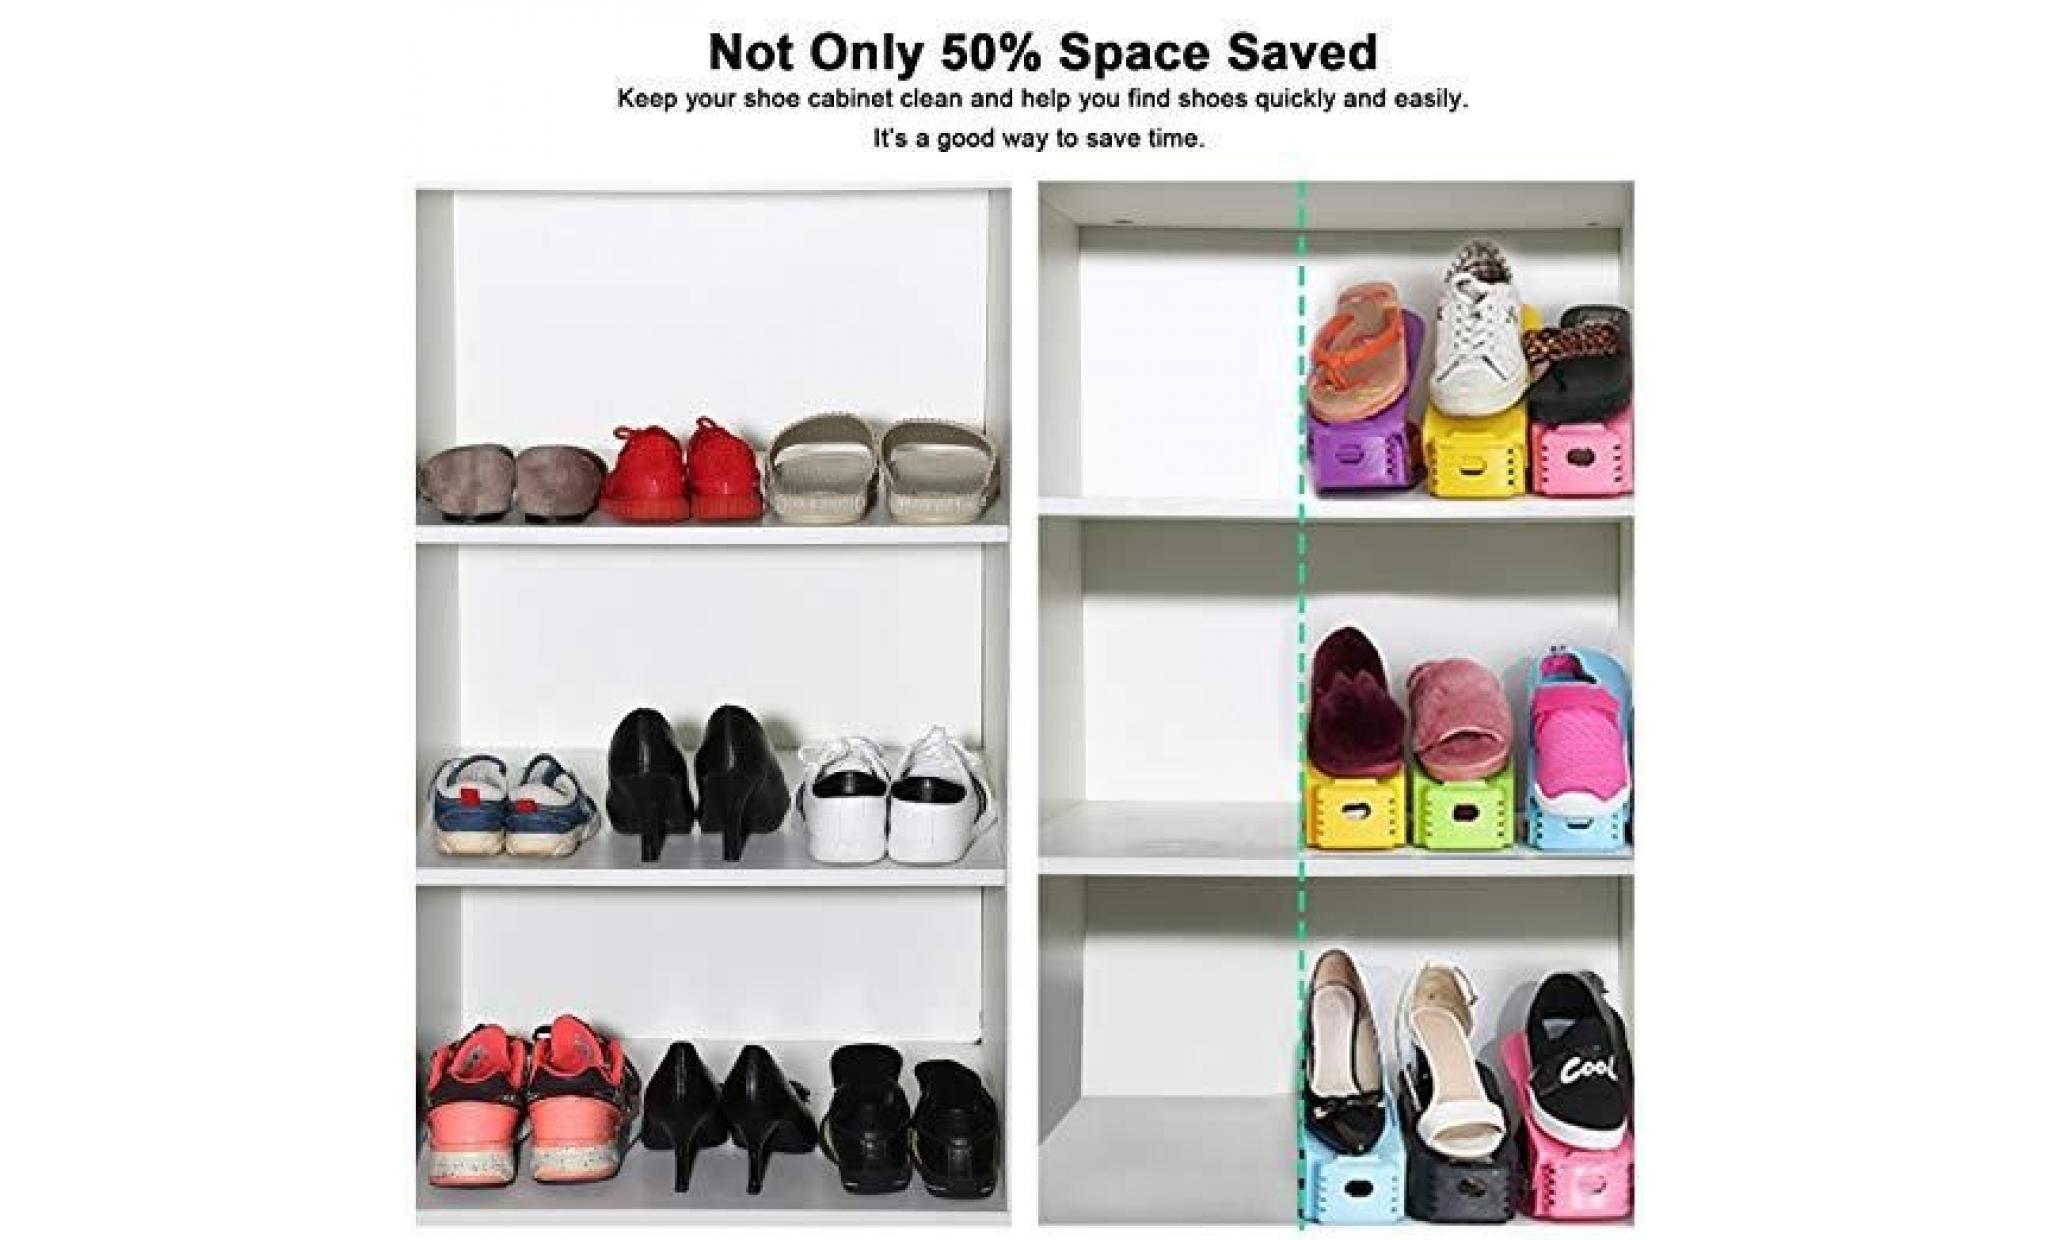 reglable à chaussures rangement organiseur chaussures support empiler les chaussures pour économie d'espace de meuble pas cher